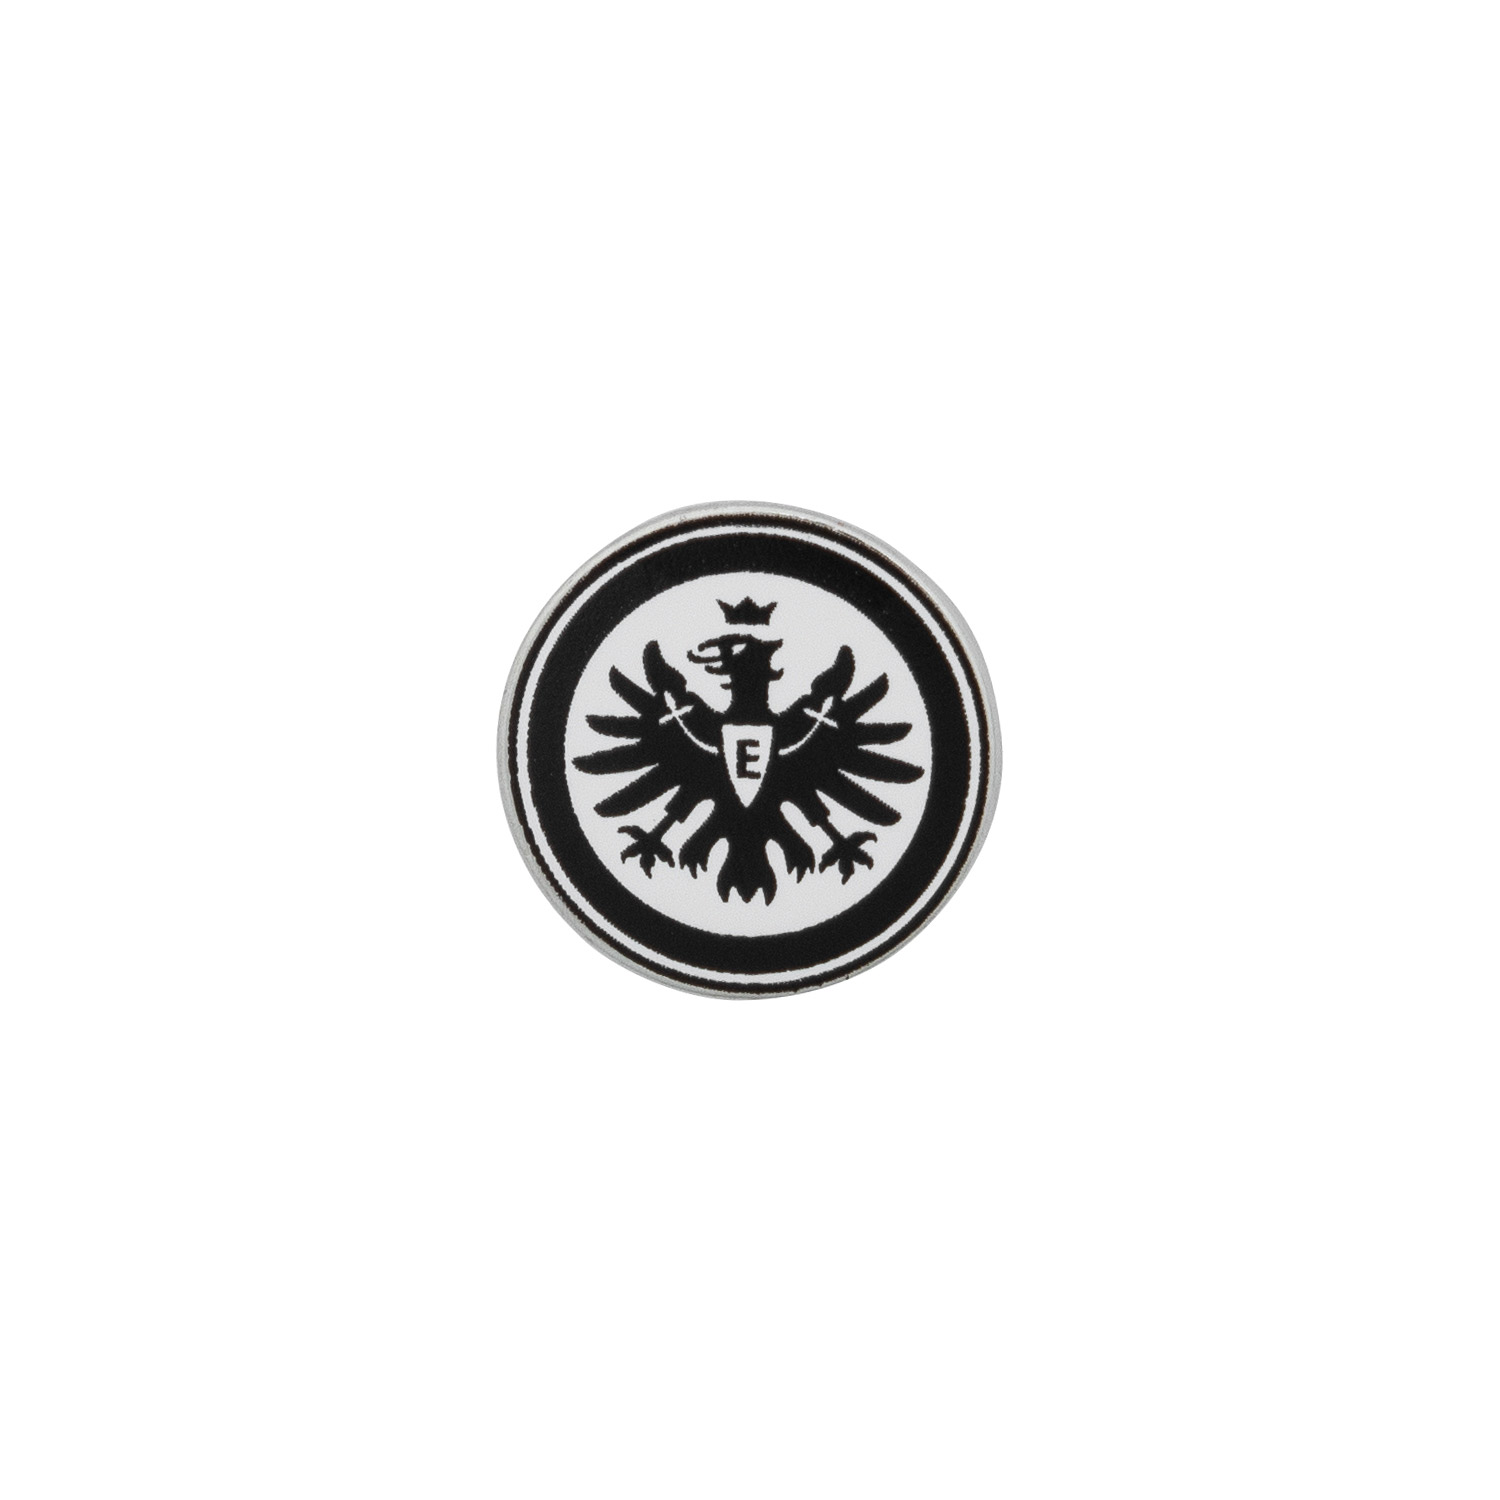 Bild 1: Pin Logo Schwarz Weiß